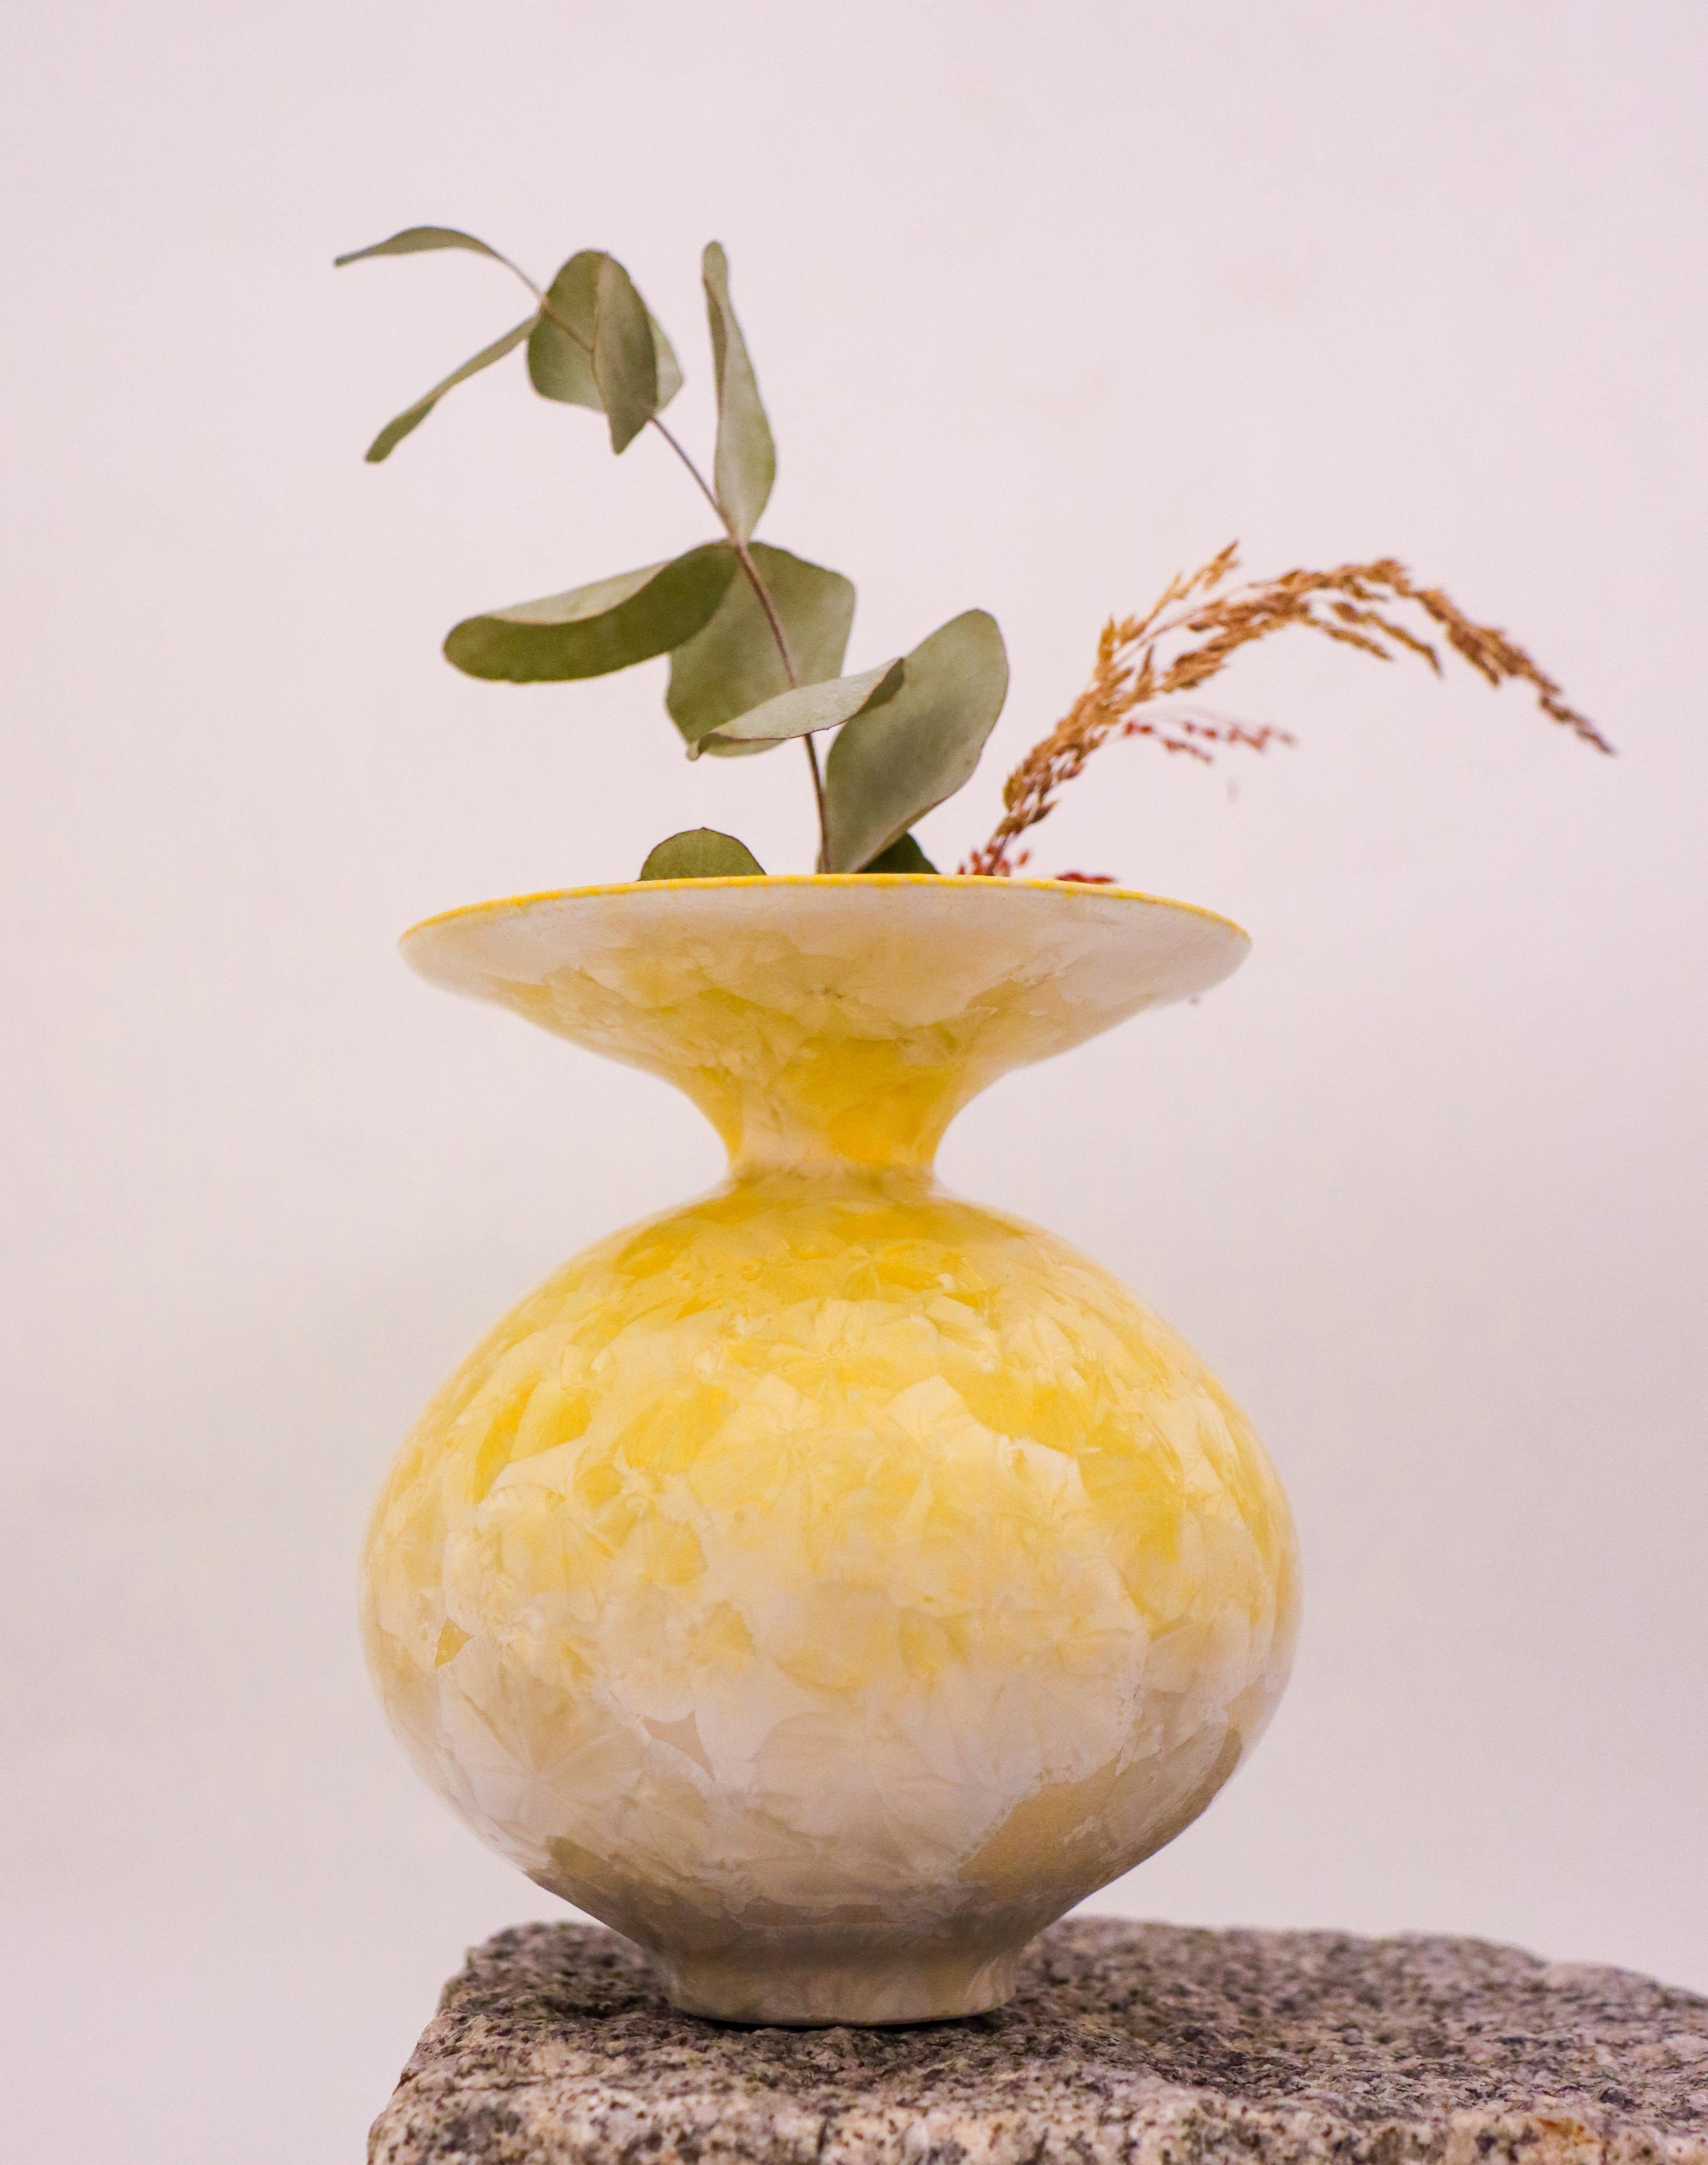 Ce vase Isak Isaksson présente un étonnant design abstrait, avec une finition brillante et une belle couleur jaune. Le vase, d'une hauteur de 12,5 cm, est fabriqué en céramique et recouvert d'une glaçure cristalline. Il s'agit d'une pièce